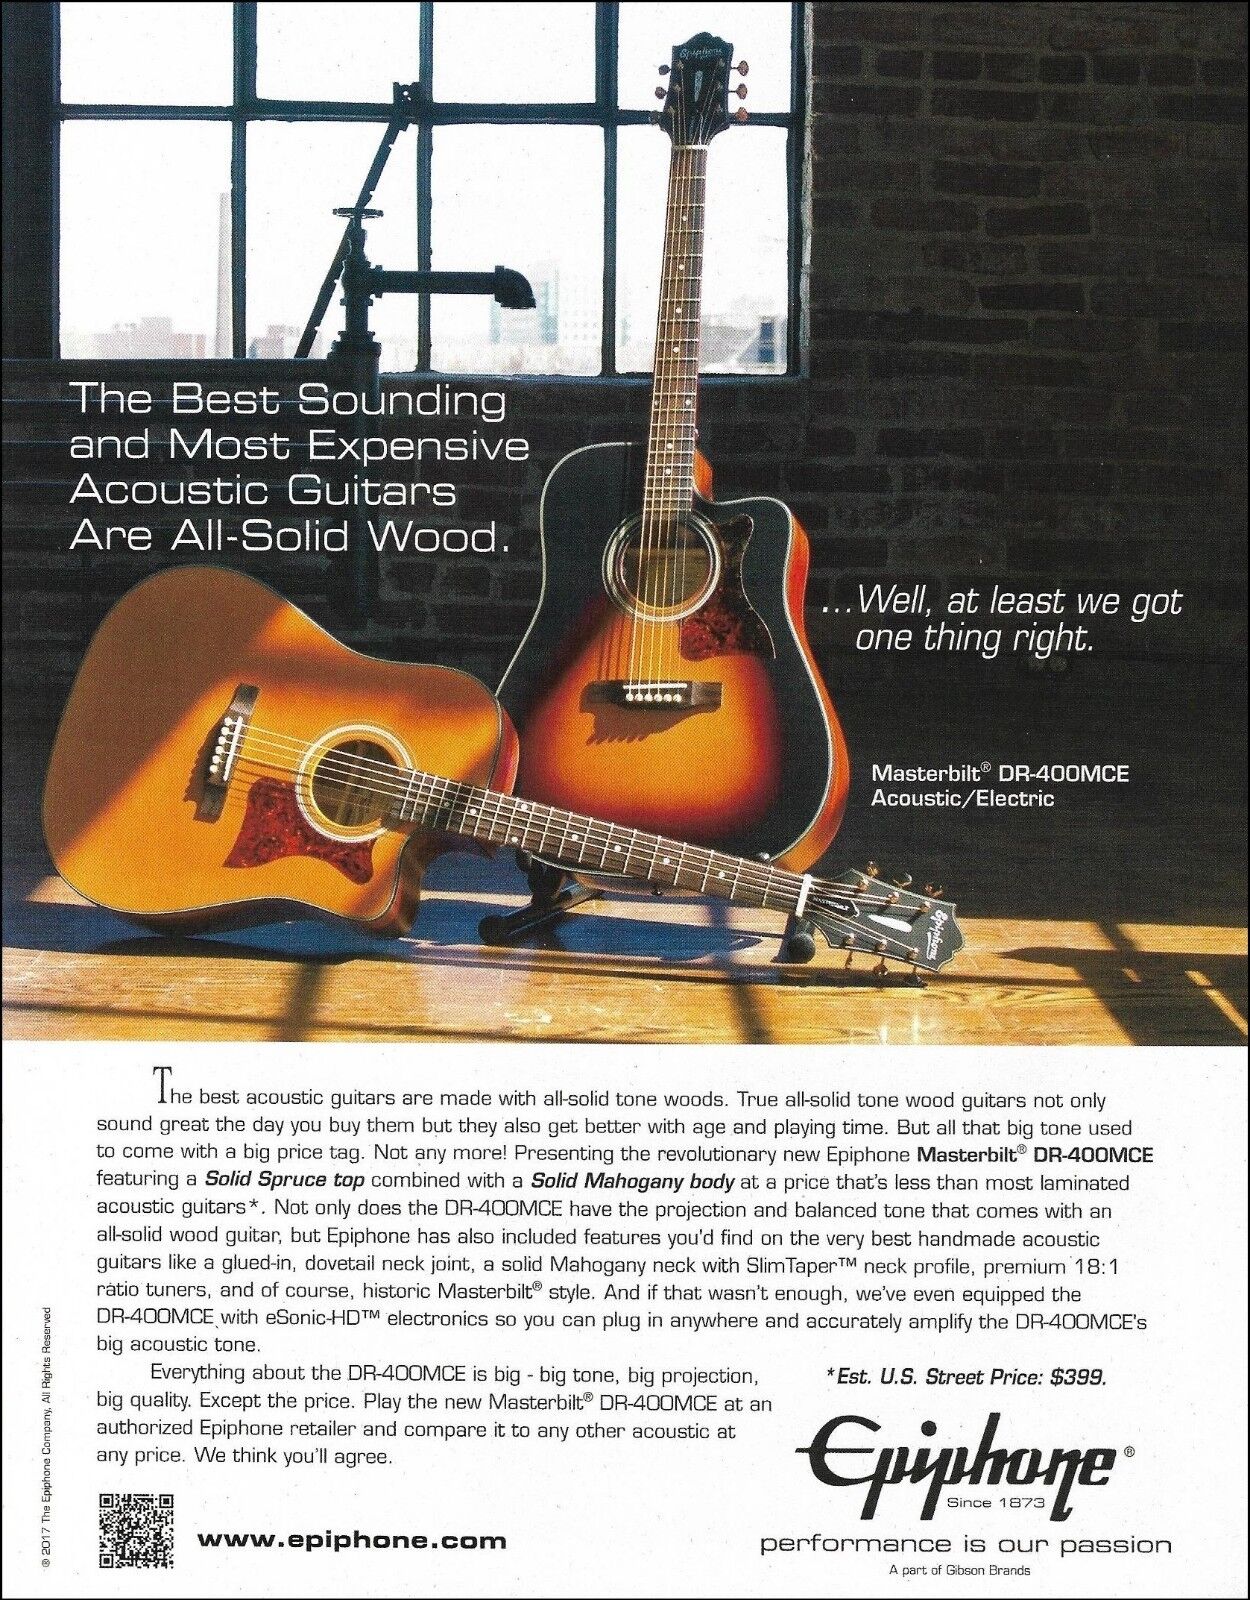 Epiphone Masterbilt DR-400MCE acoustic/electric guitar advertisement ad print